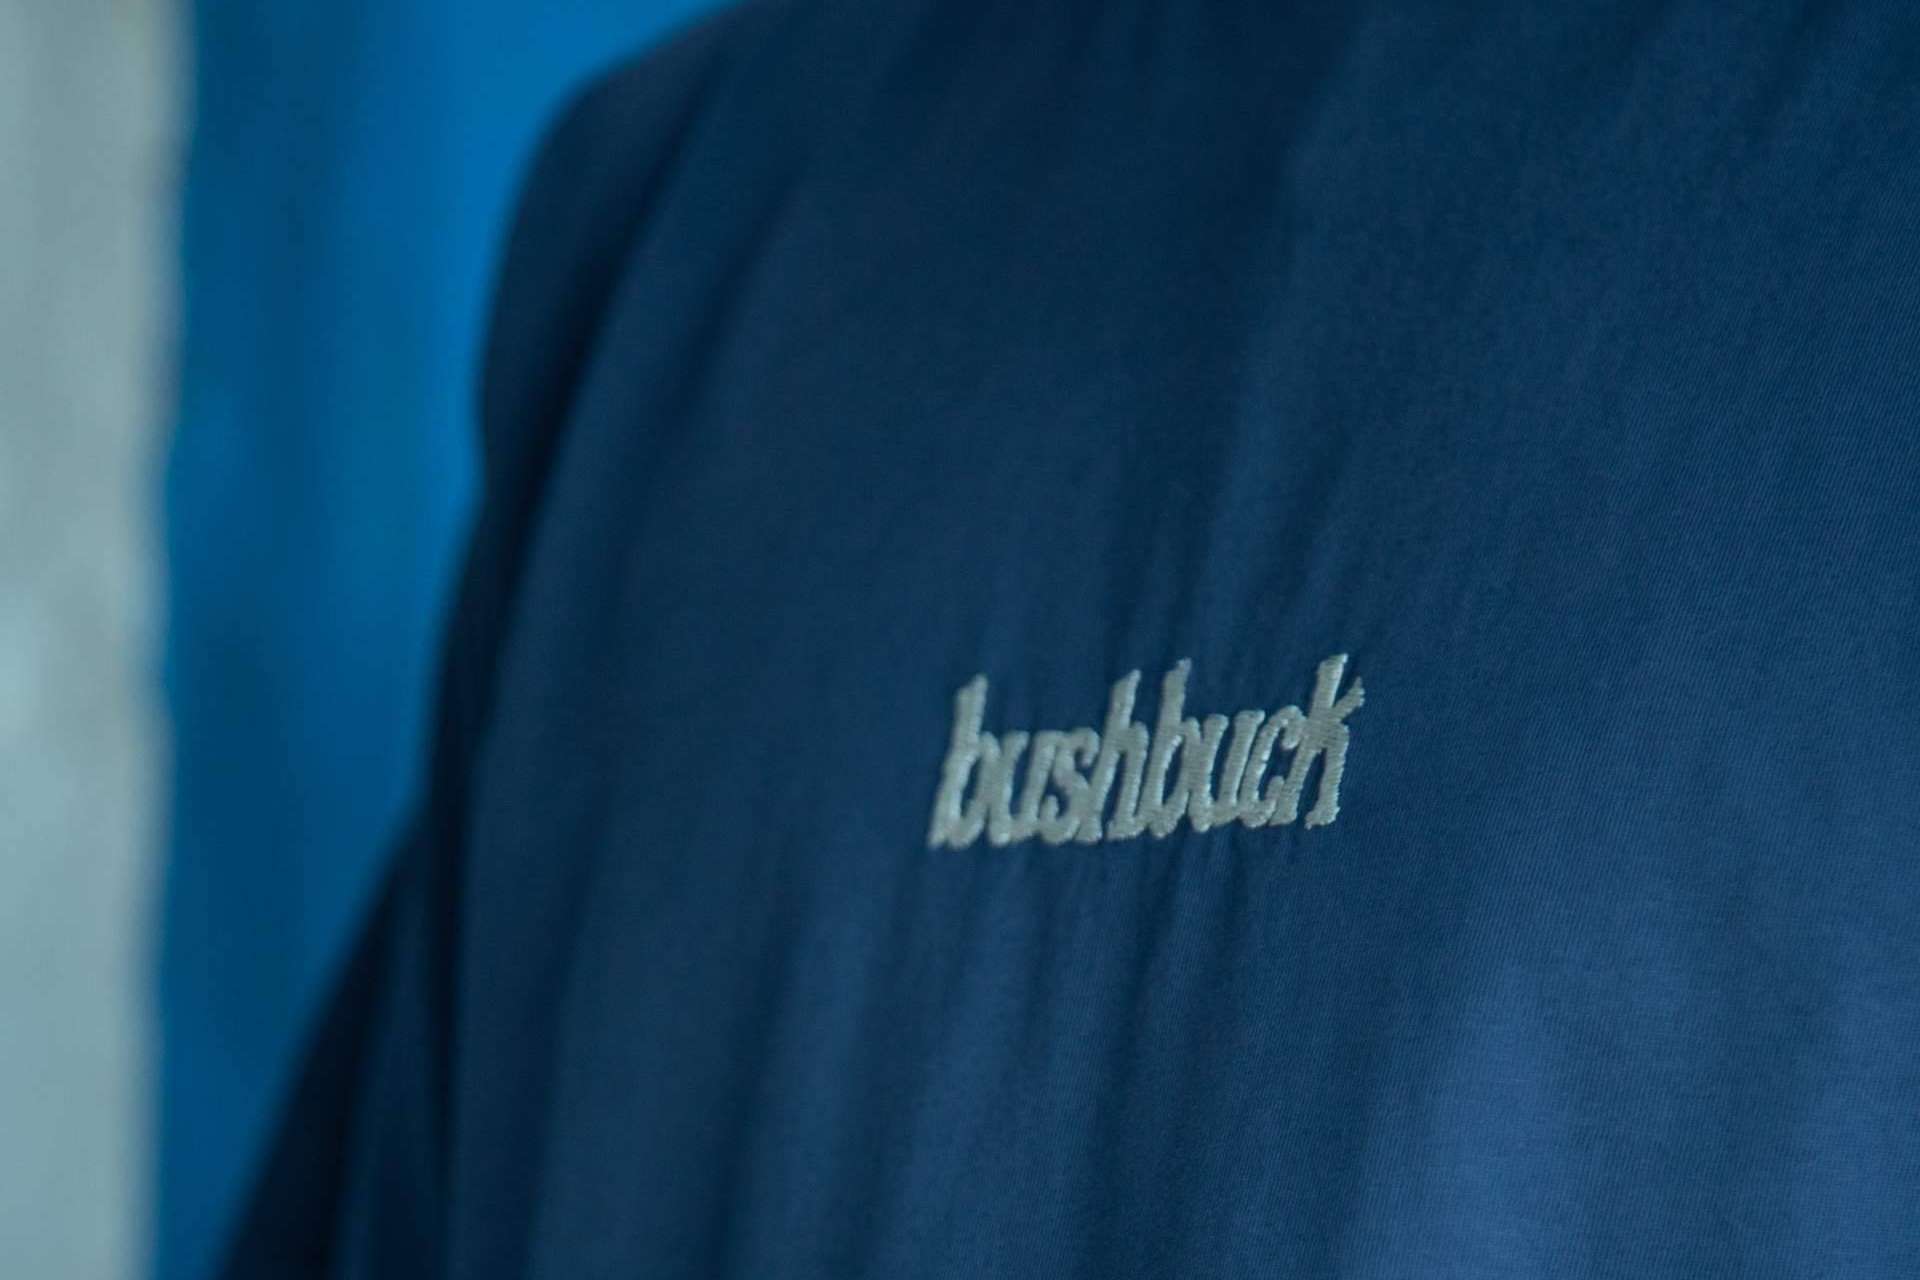 Bushbuck abre su primera tienda en Madrid